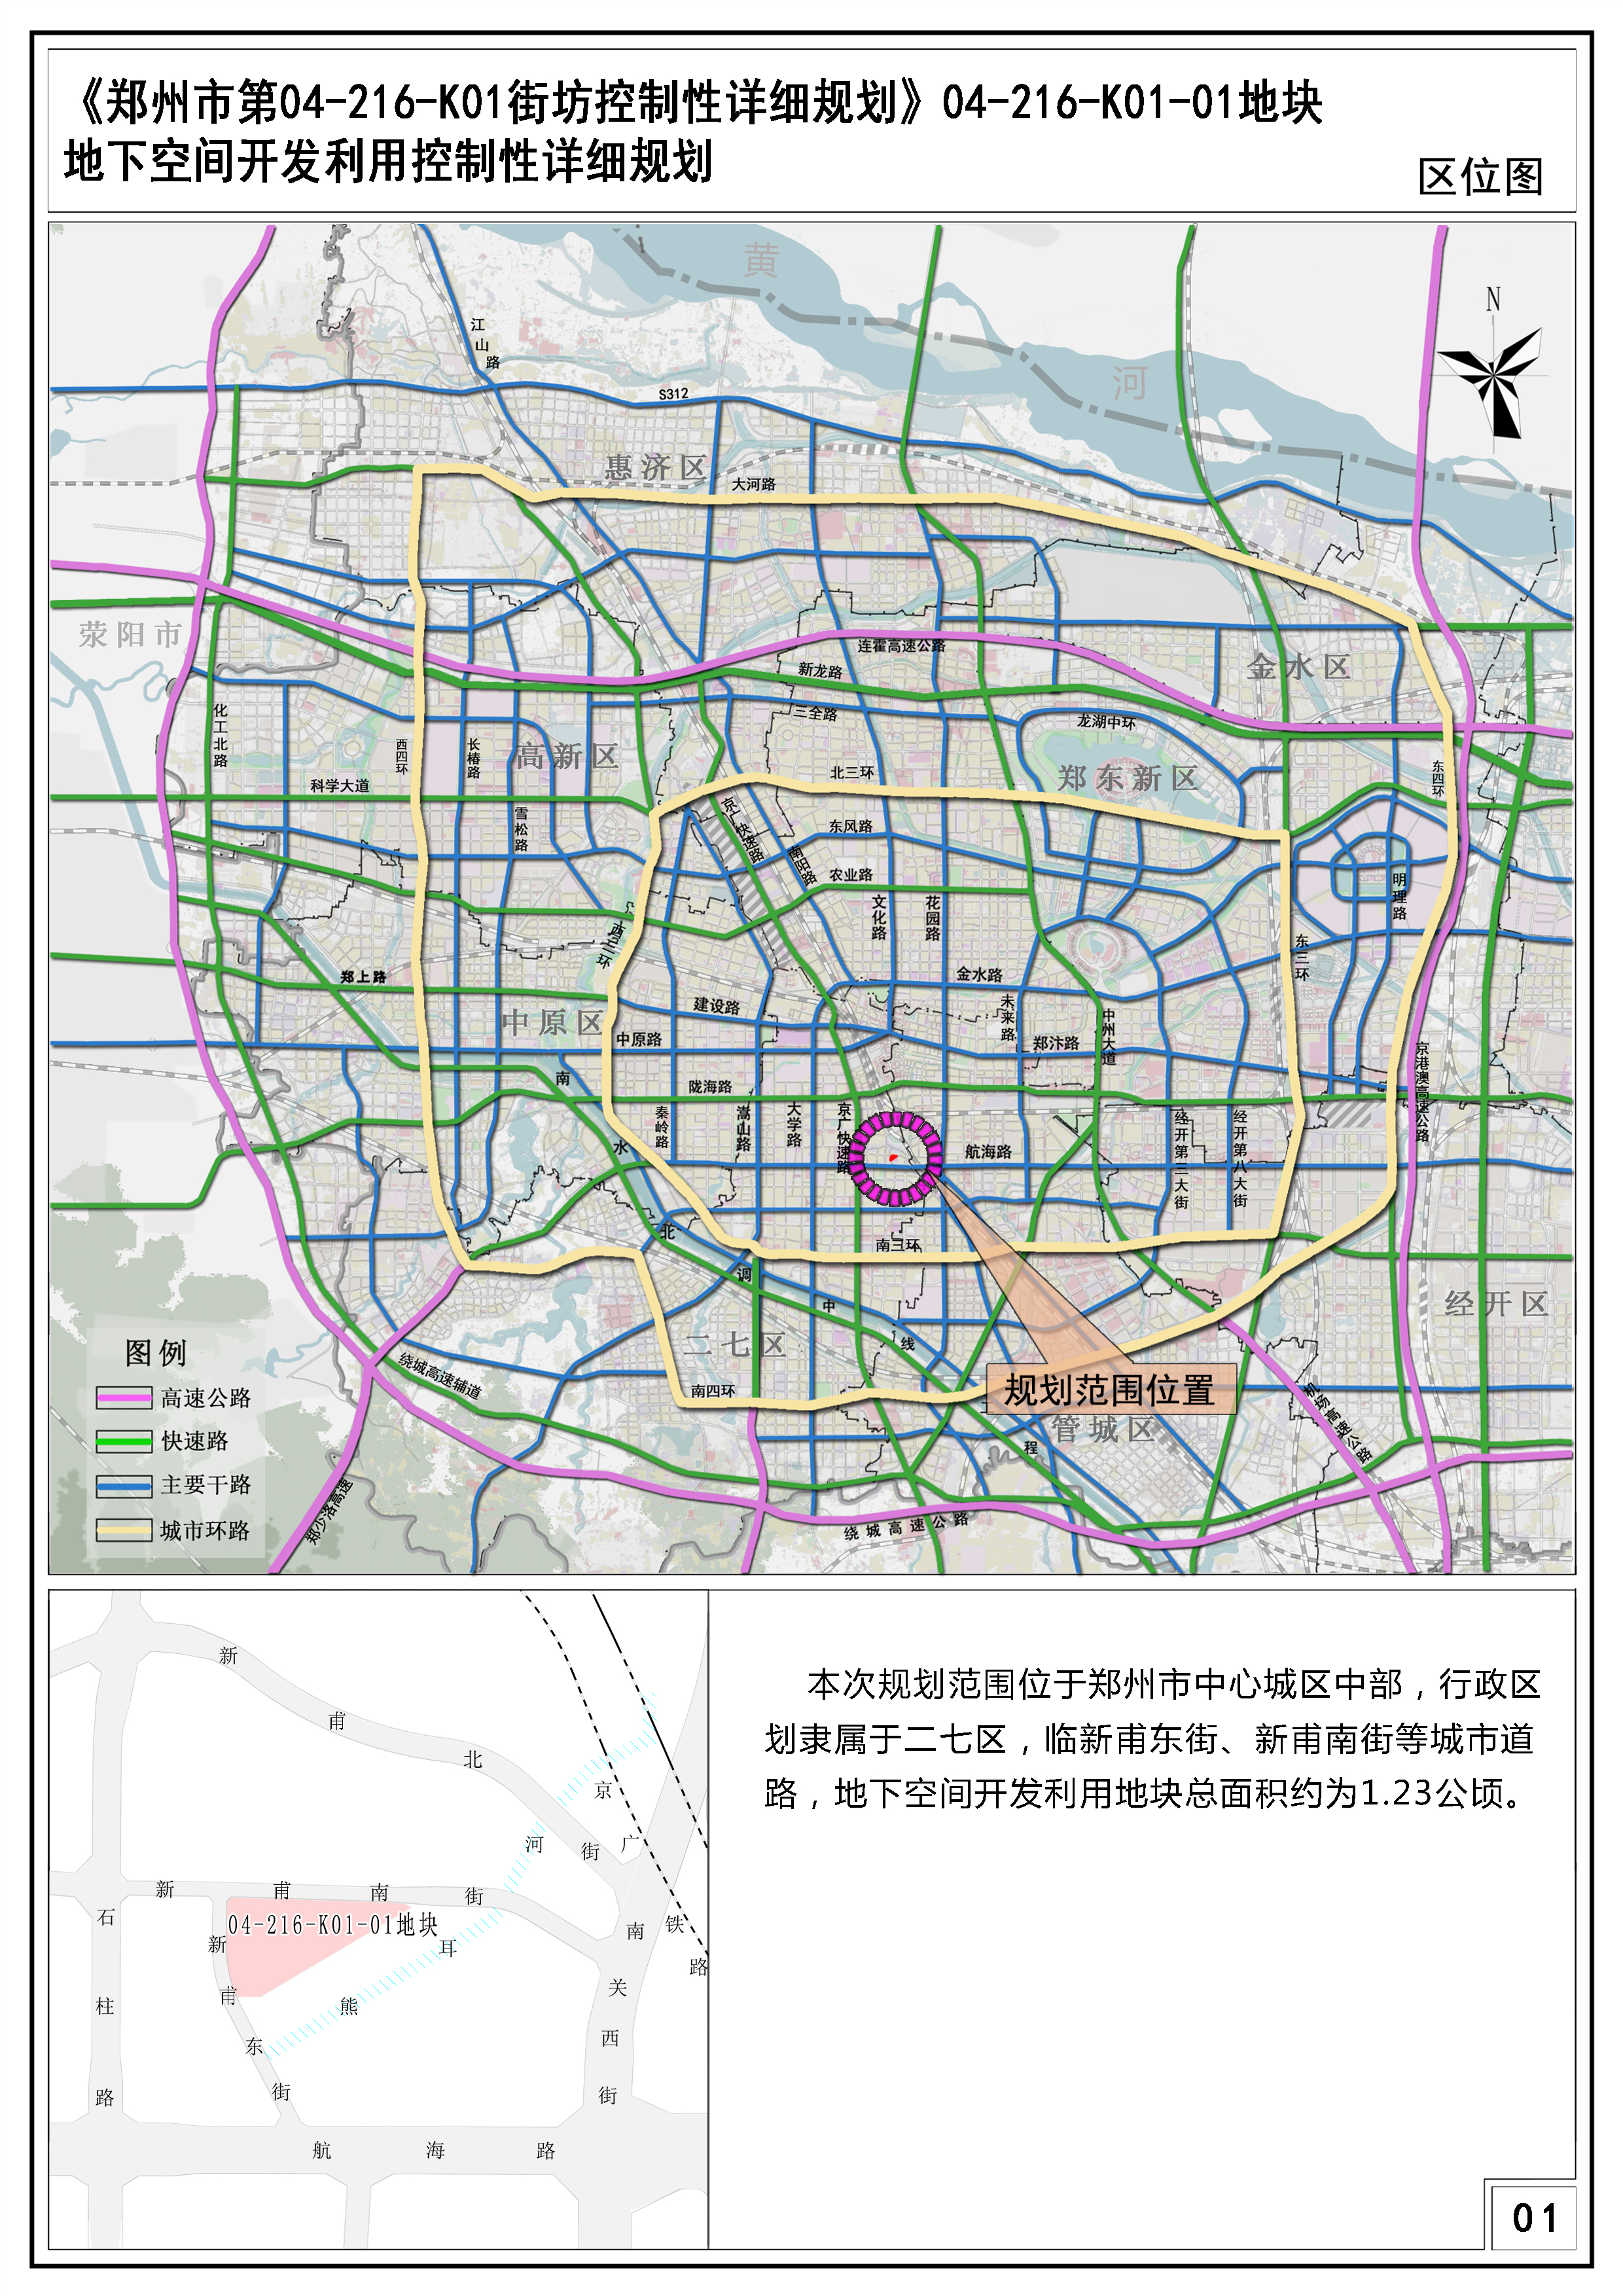 《郑州市第04-216-K01街坊控制性详细规划》04-216-K01-01地块地下空间开发利用控制性详细规划